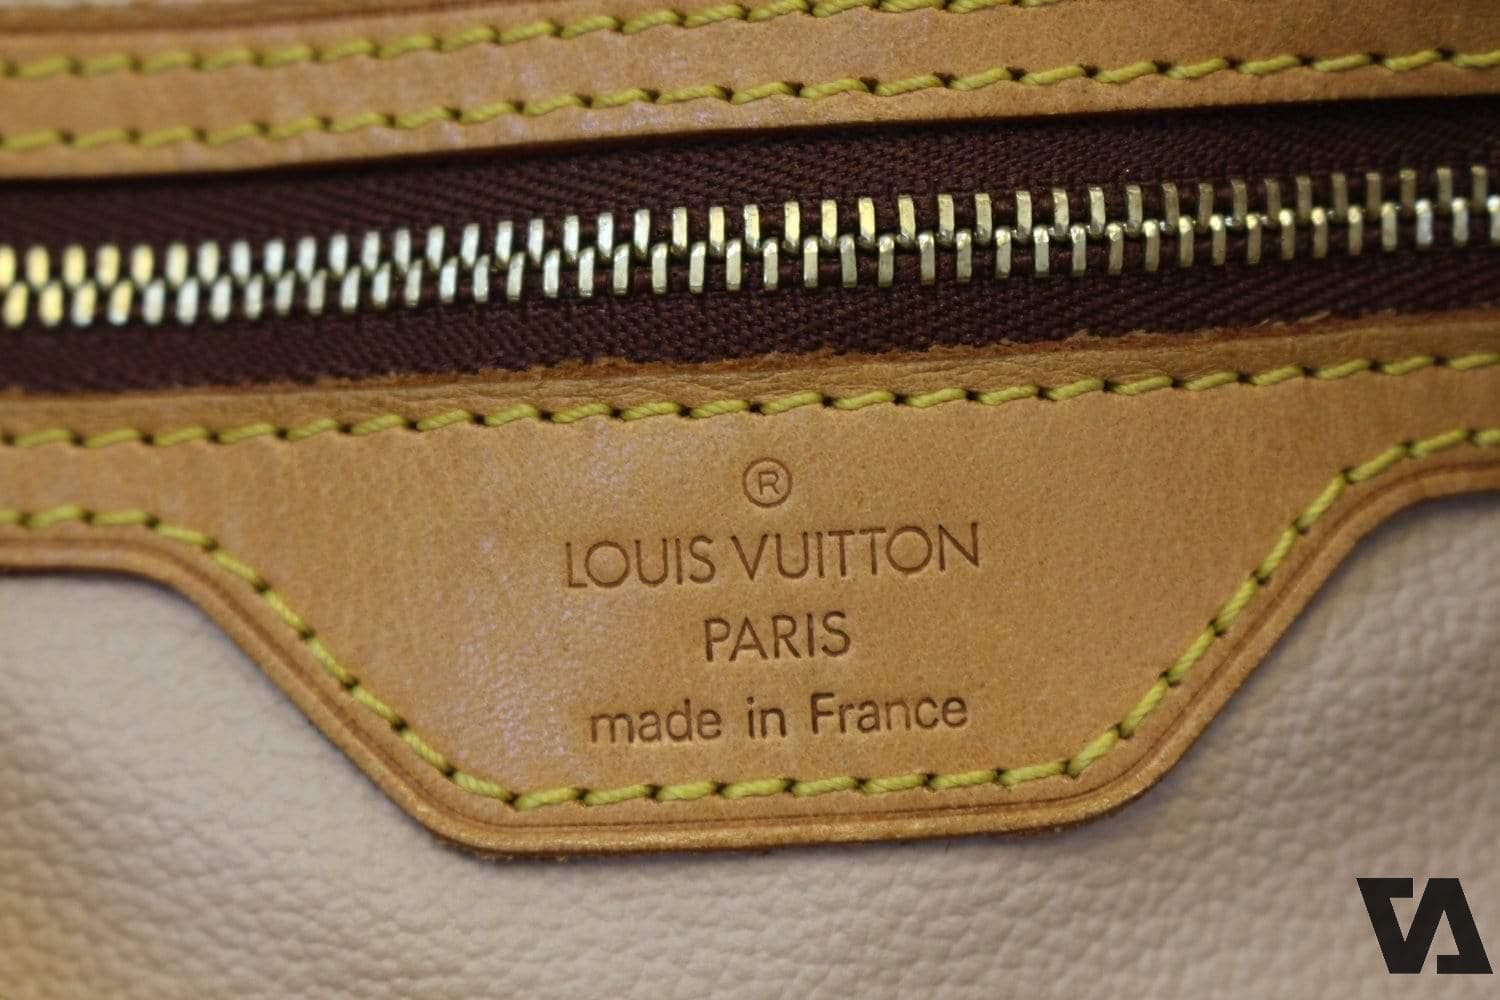 Cách nhận biết ví cầm tay nam Louis Vuitton chính hãng